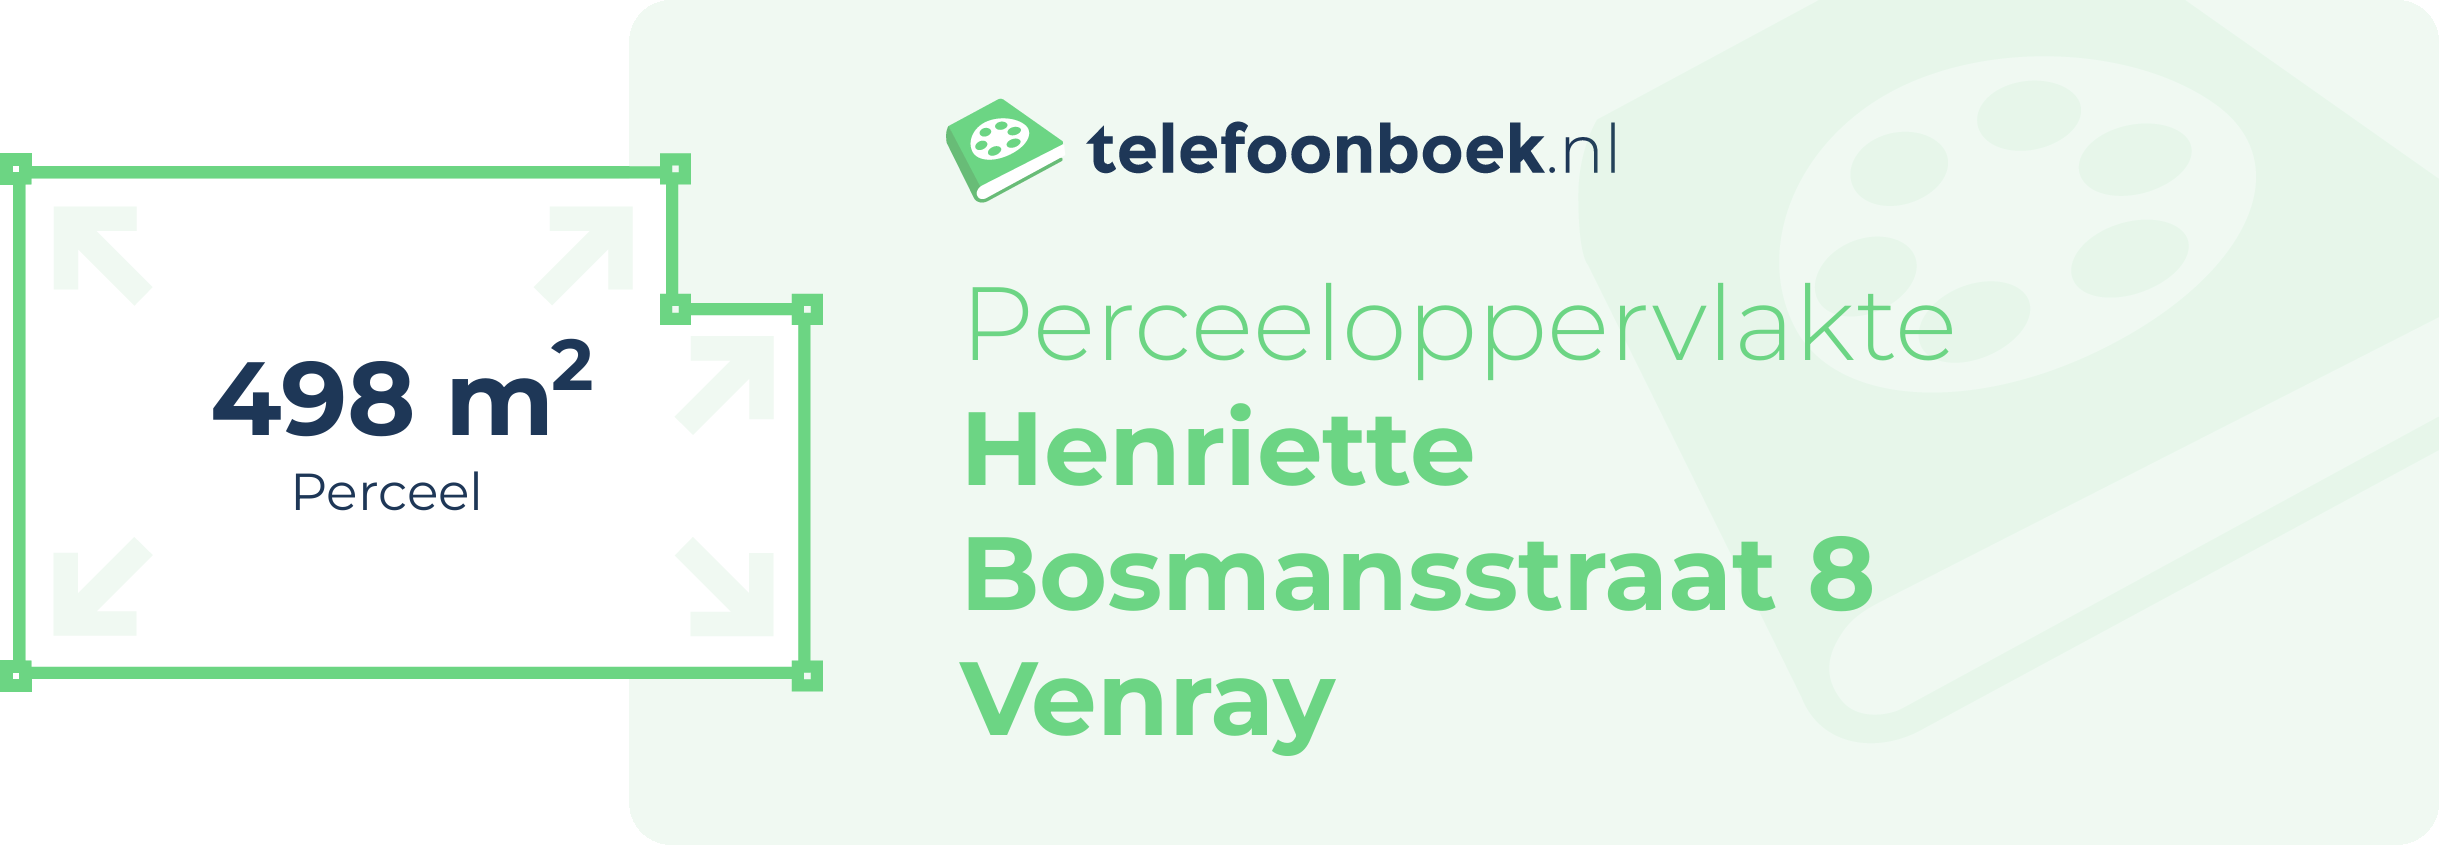 Perceeloppervlakte Henriette Bosmansstraat 8 Venray